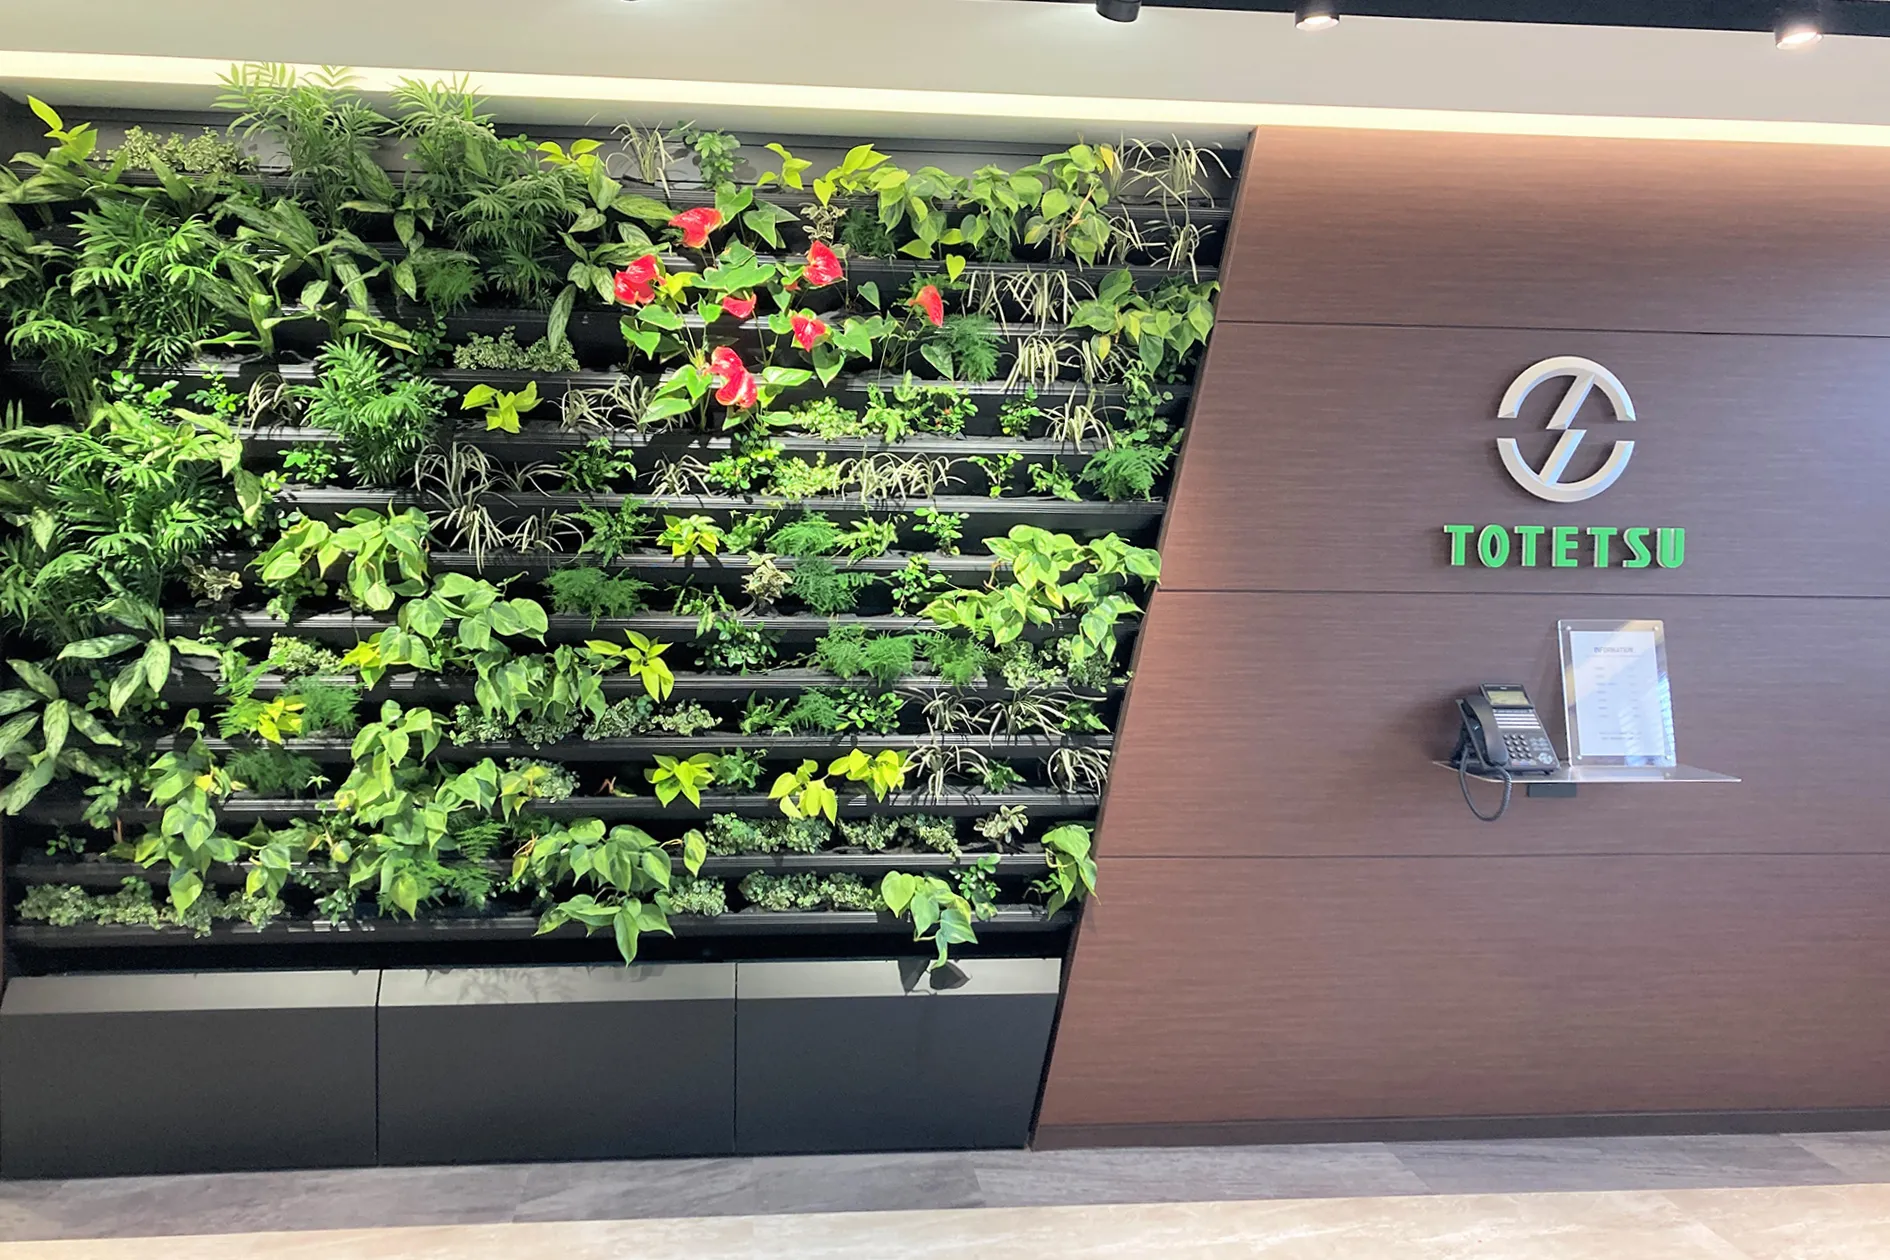 東鉄工業千葉支店エントランス室内壁面緑化のサムネイル画像です